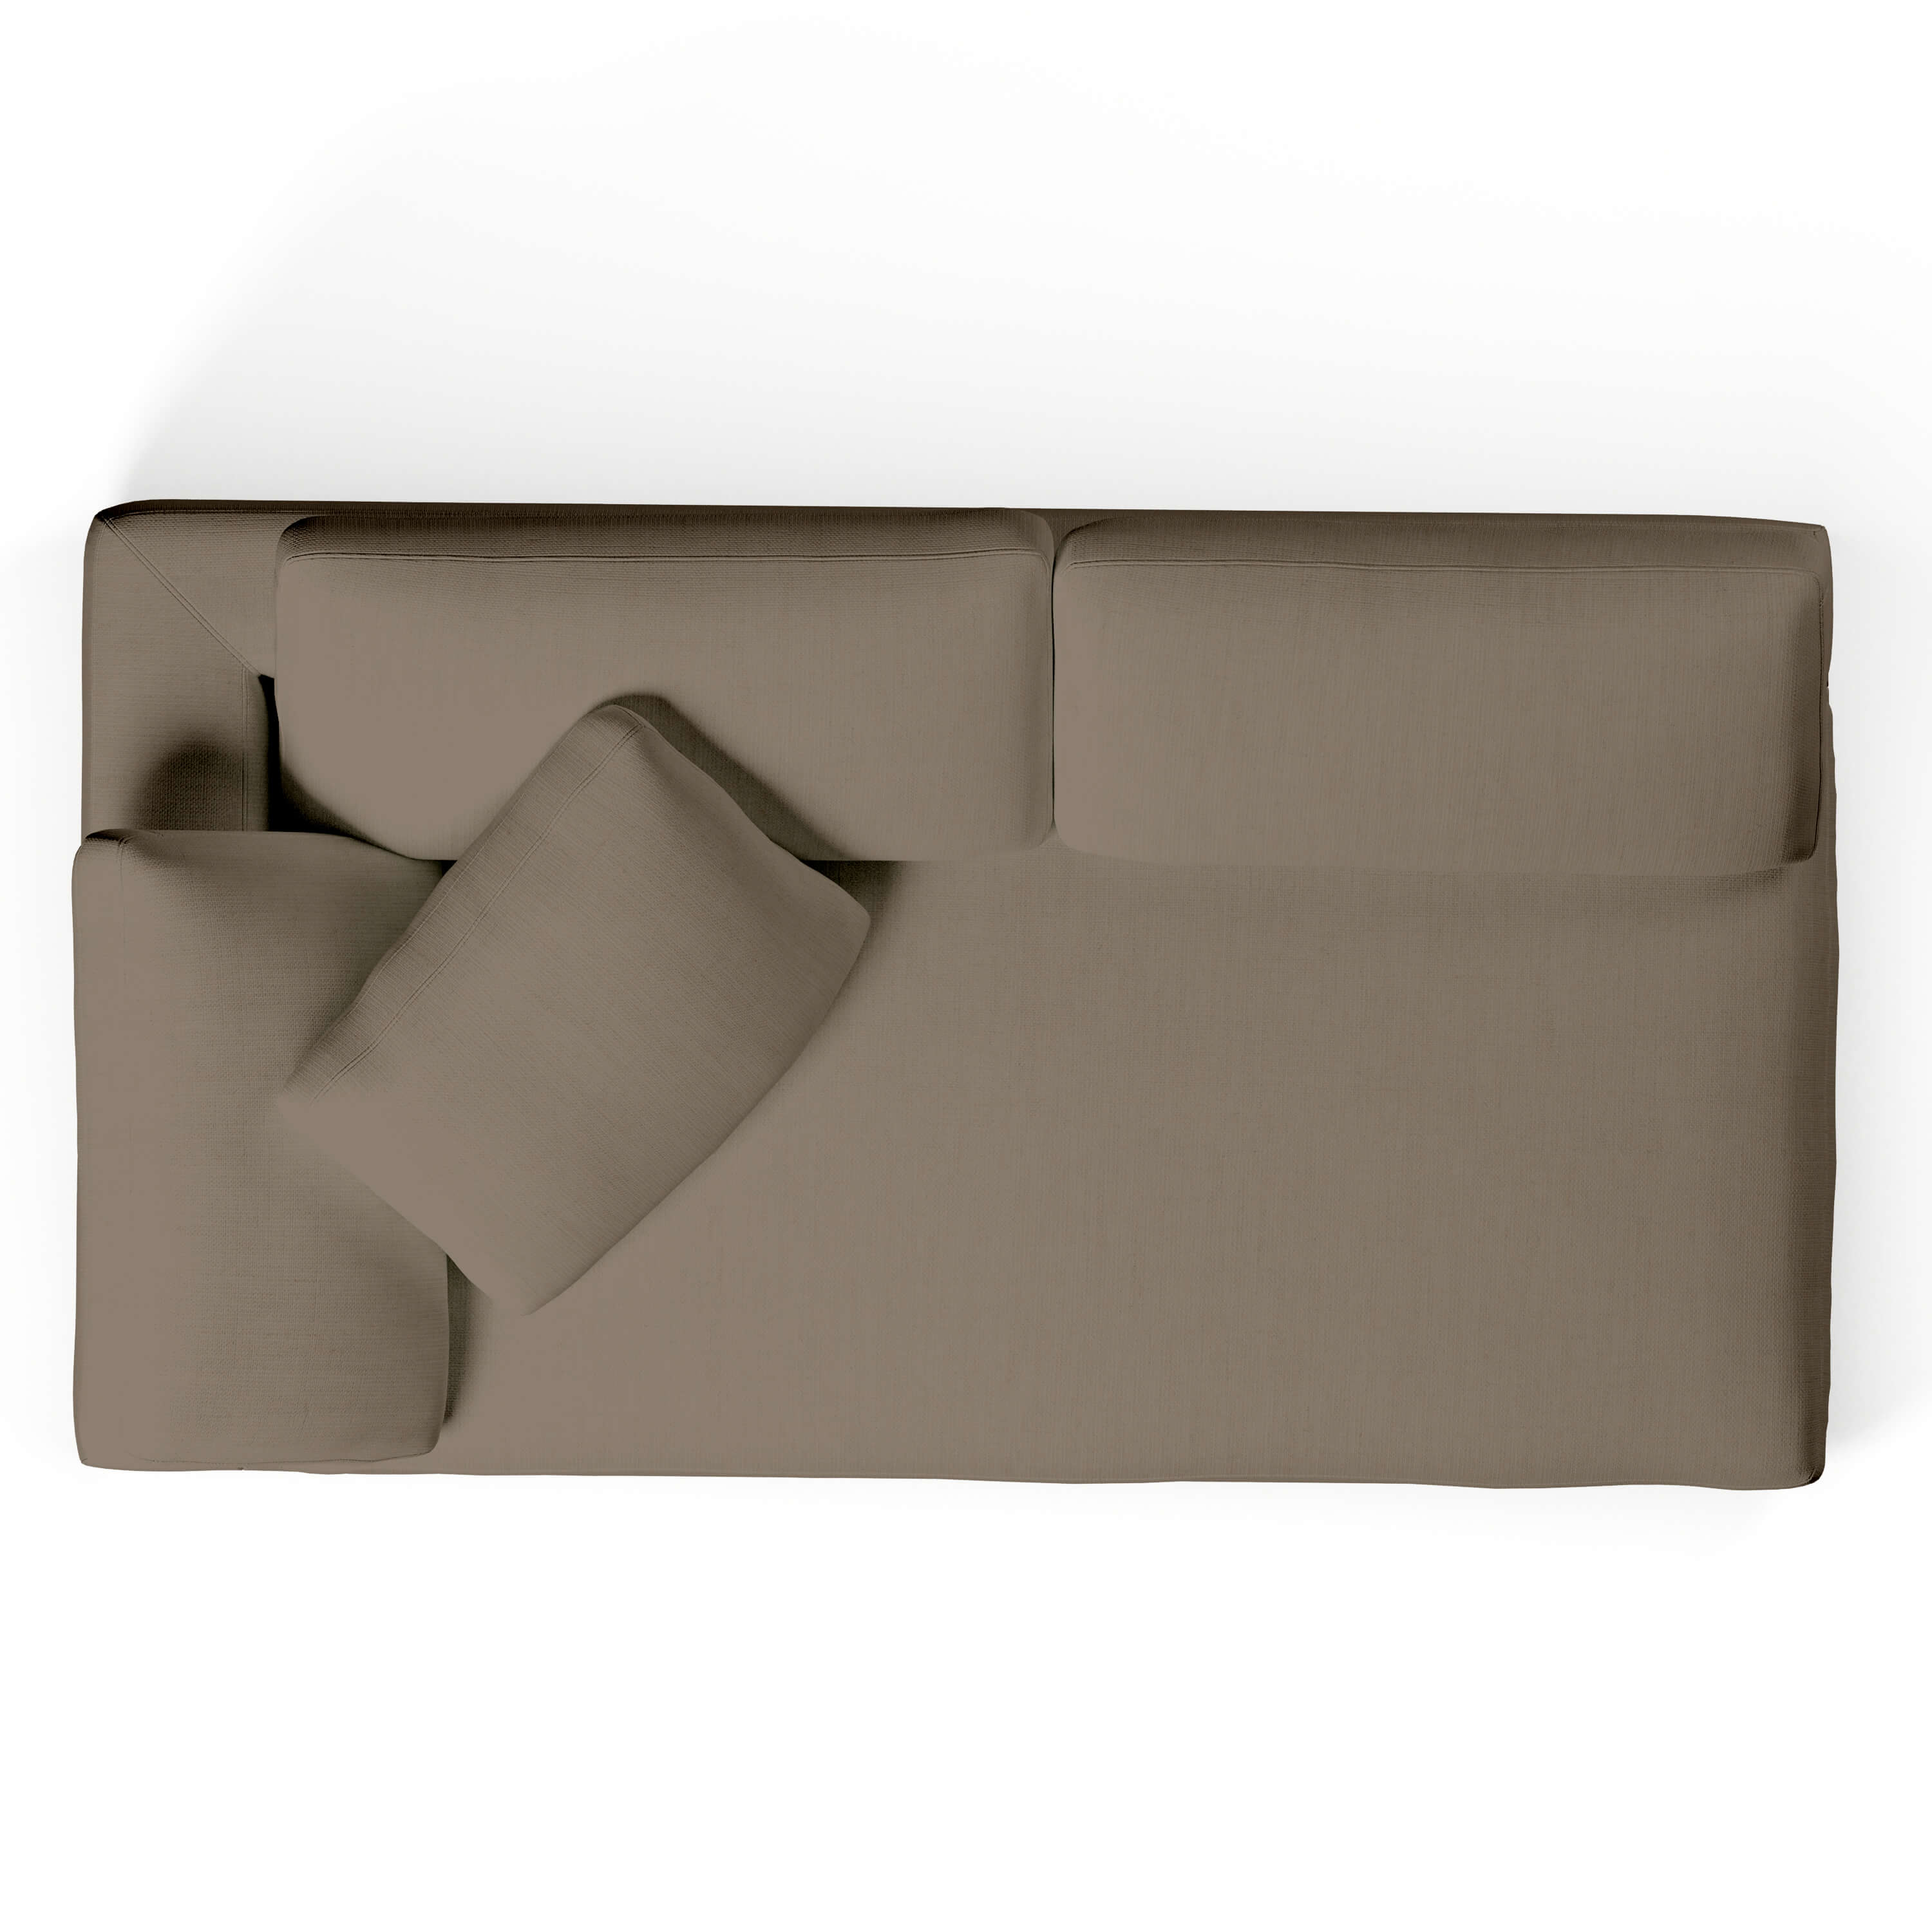 Comfy Sofa - Left-Arm